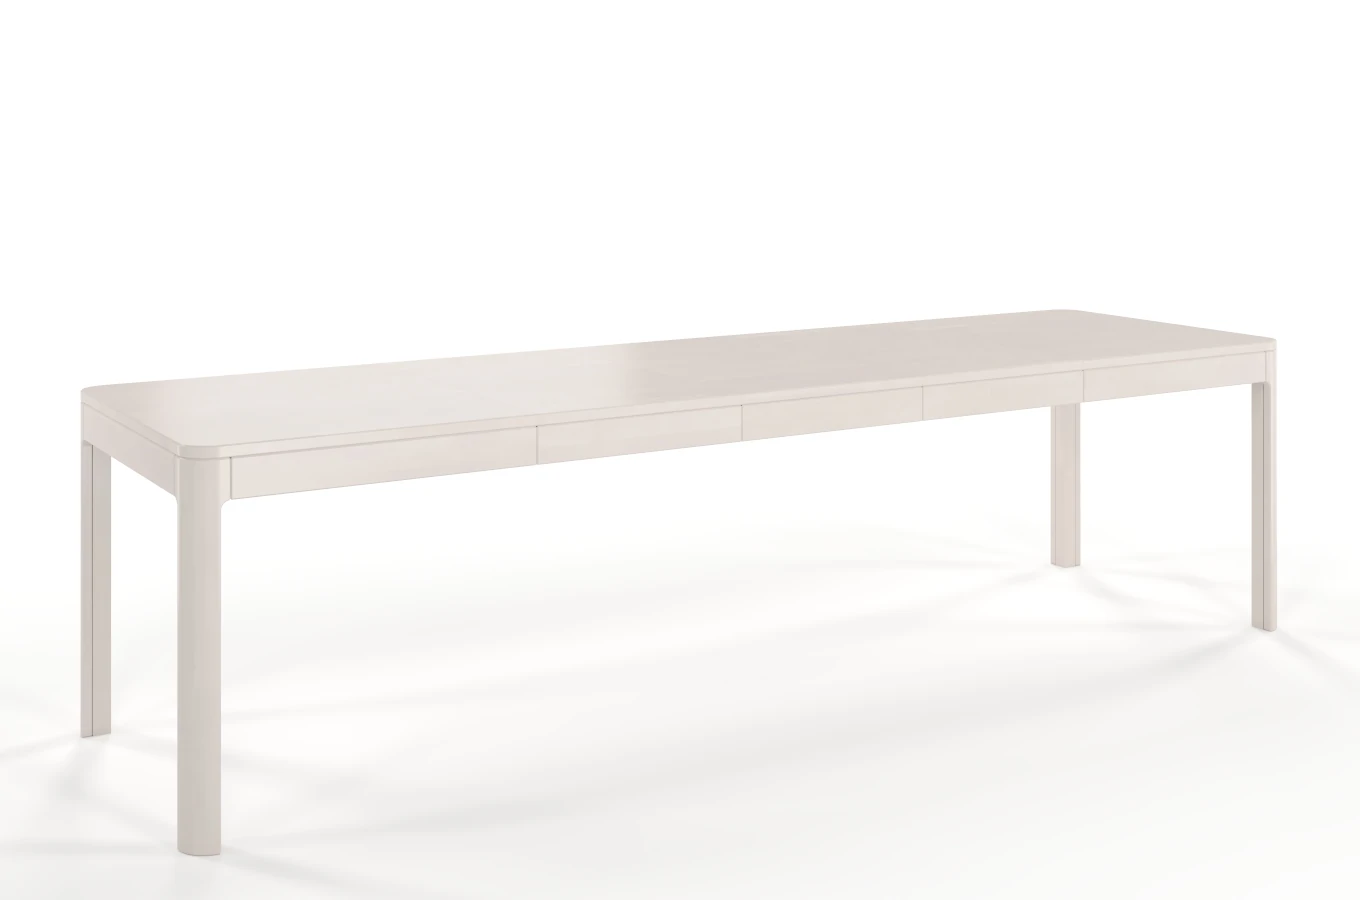 Stół drewniany bukowy rozkładany Skandica RUBY 140-260 cm / kolor biały